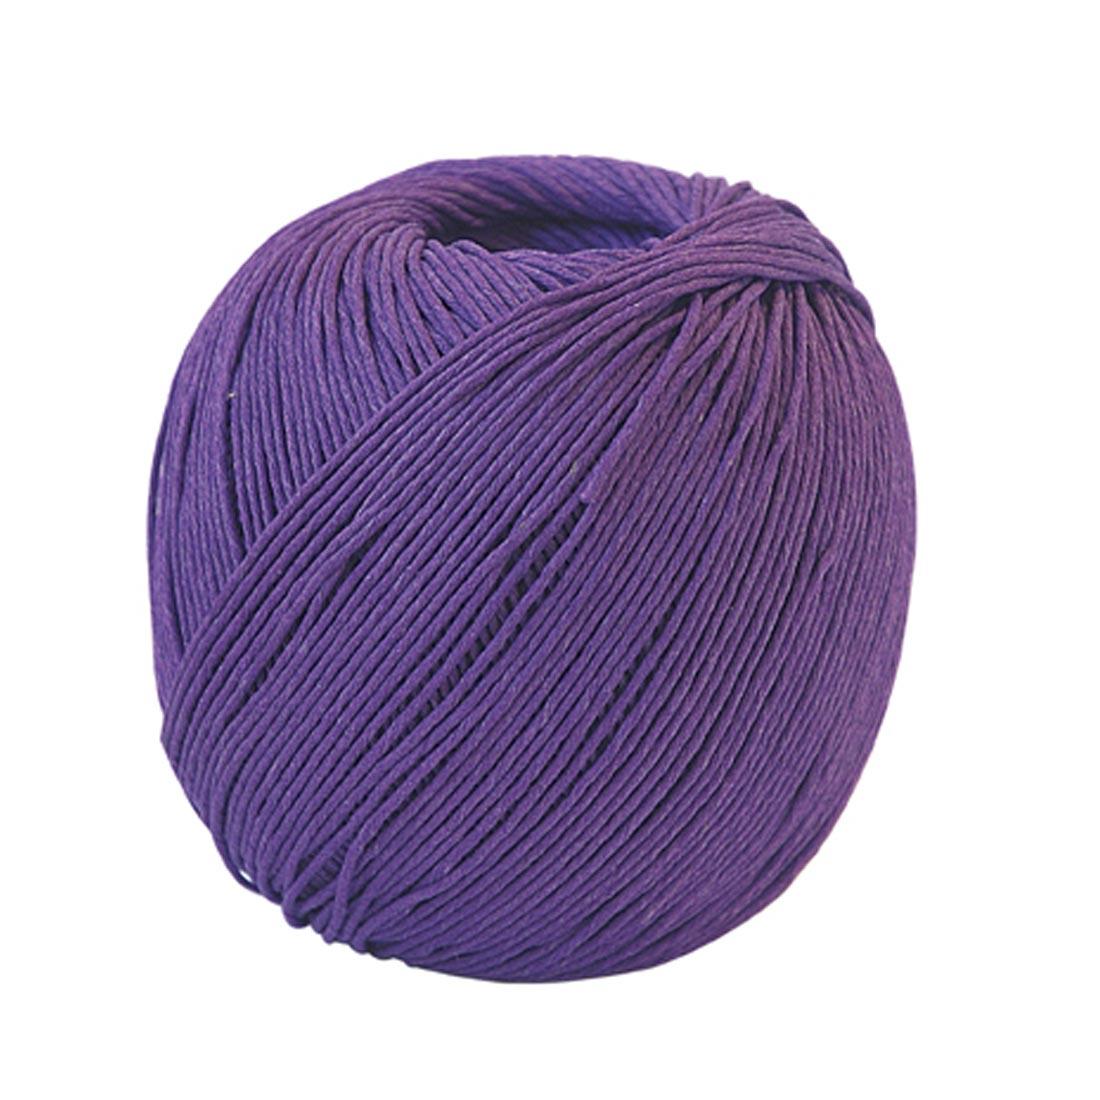 Spool of purple hemp